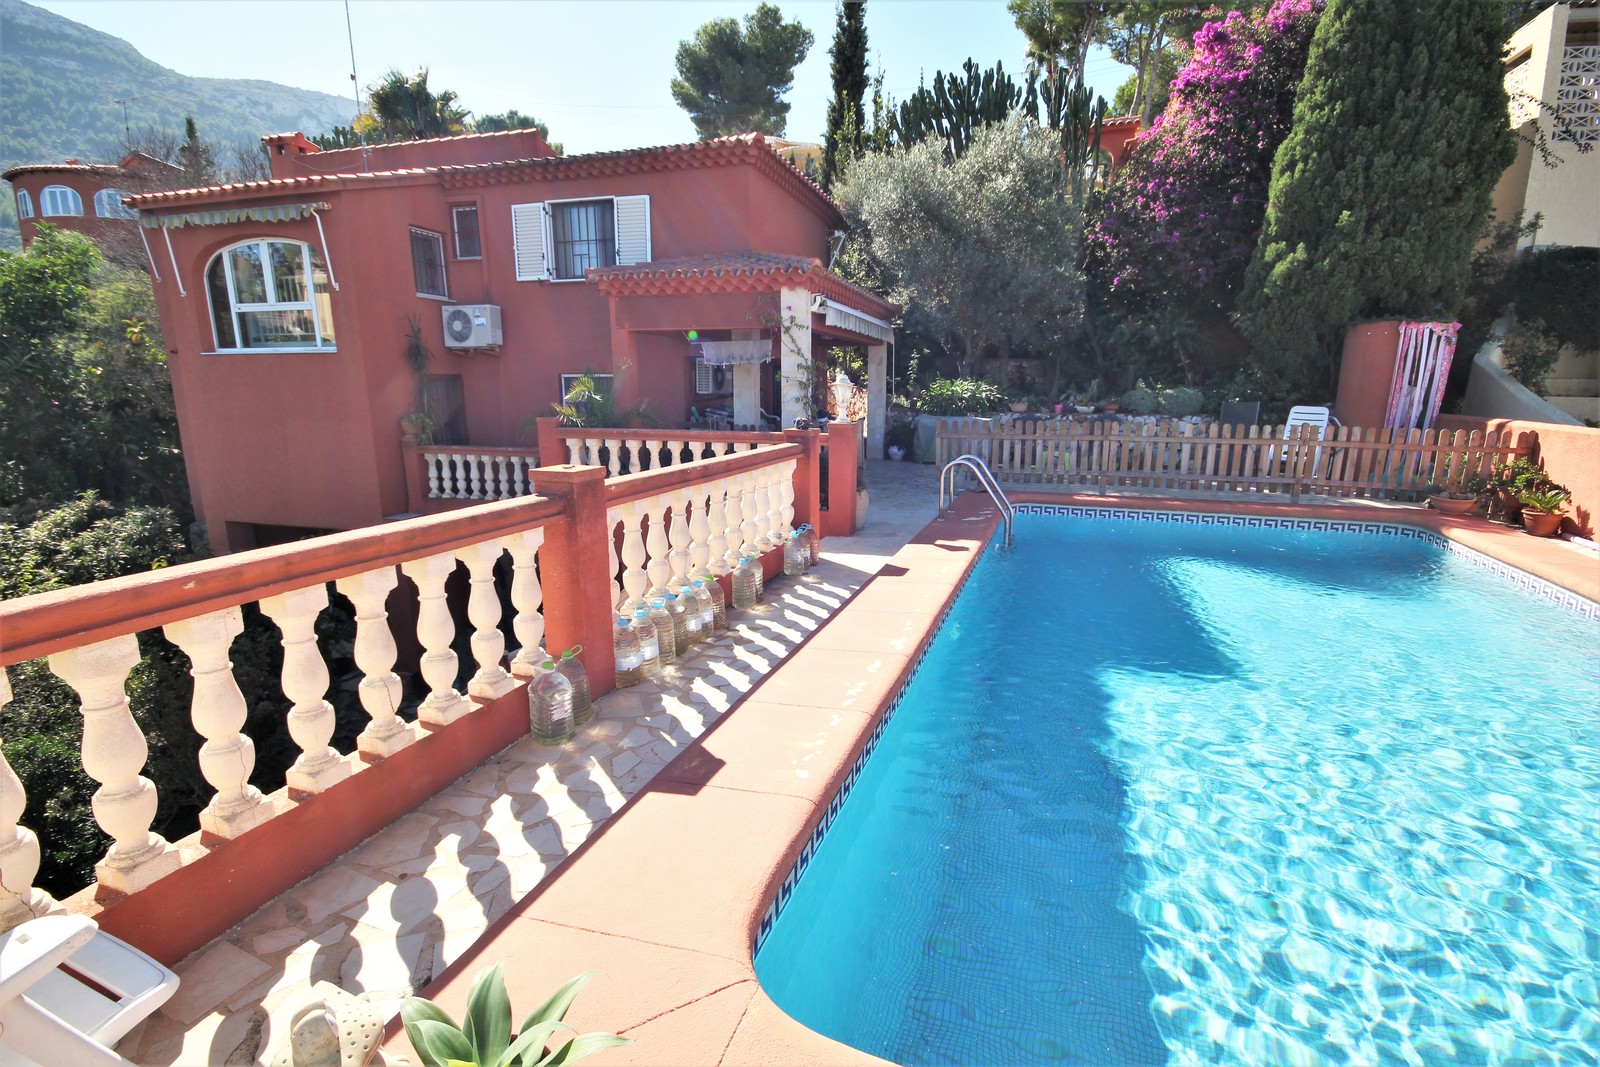 Villa con hermosas vistas y jardín, piscina de agua salada, mucho espacio, cerca de la ciudad y playas.